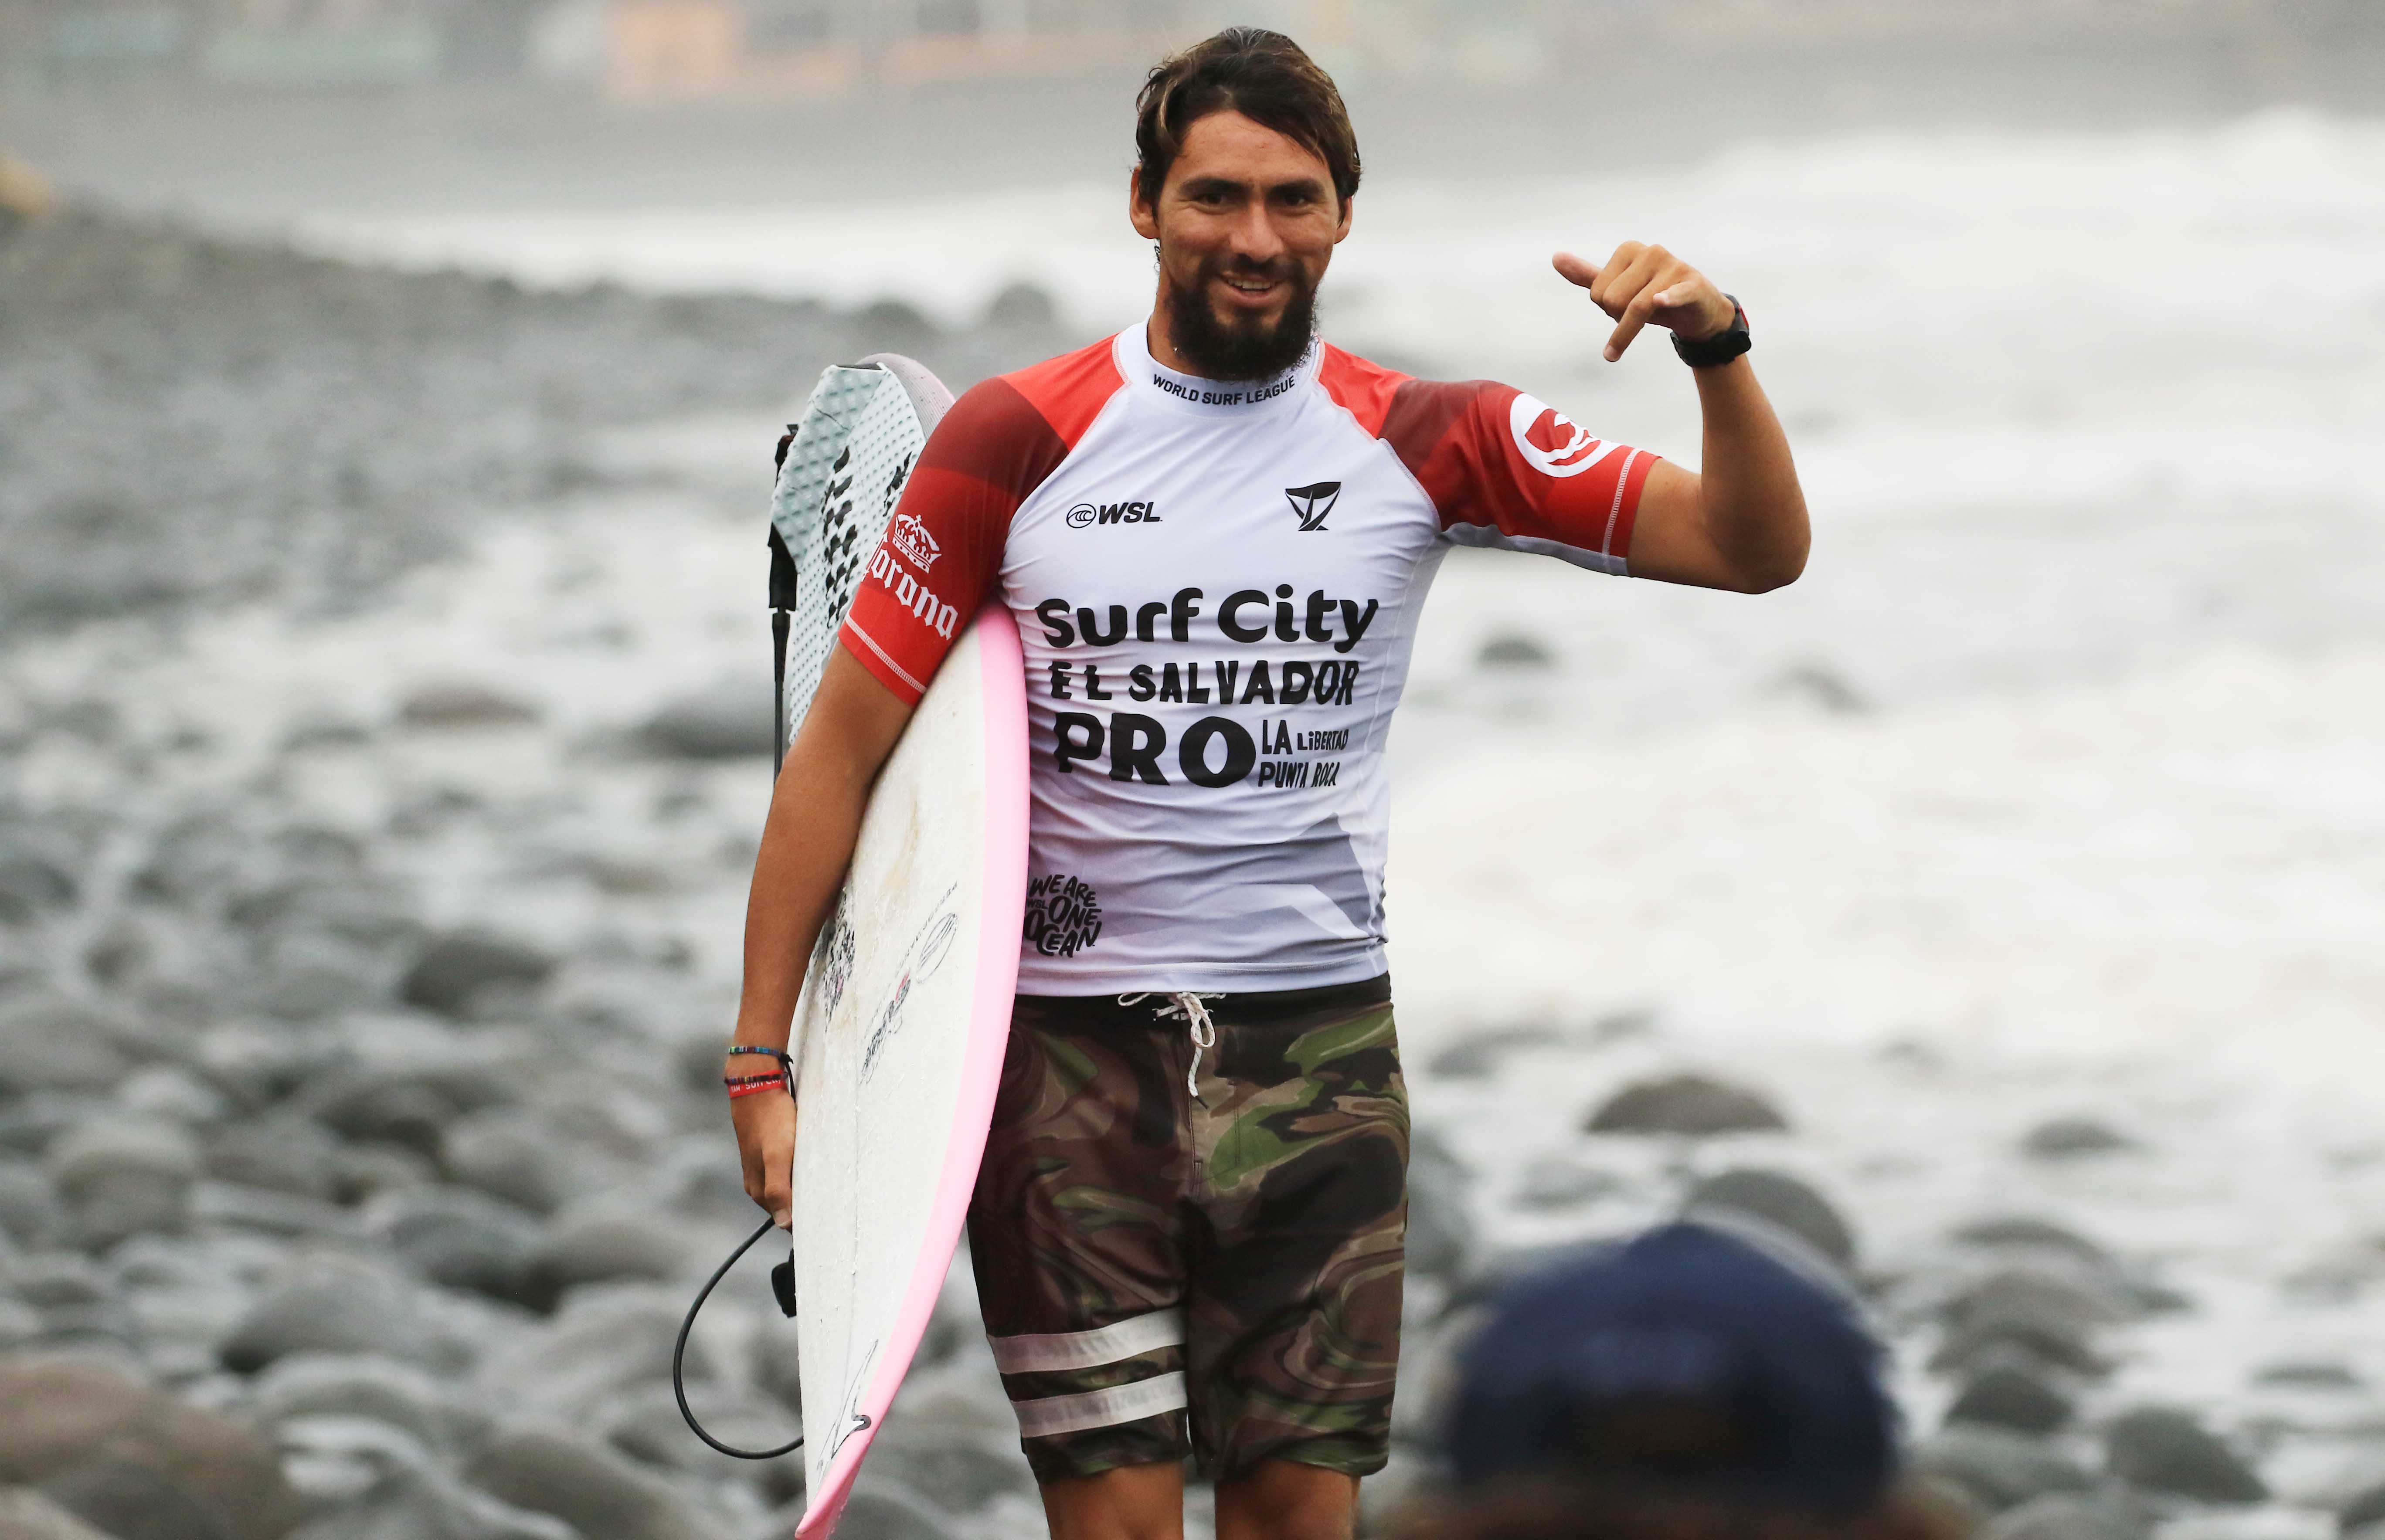 Surfer Bryan Pérez obtains a place for the Paris 2024 Olympic Games